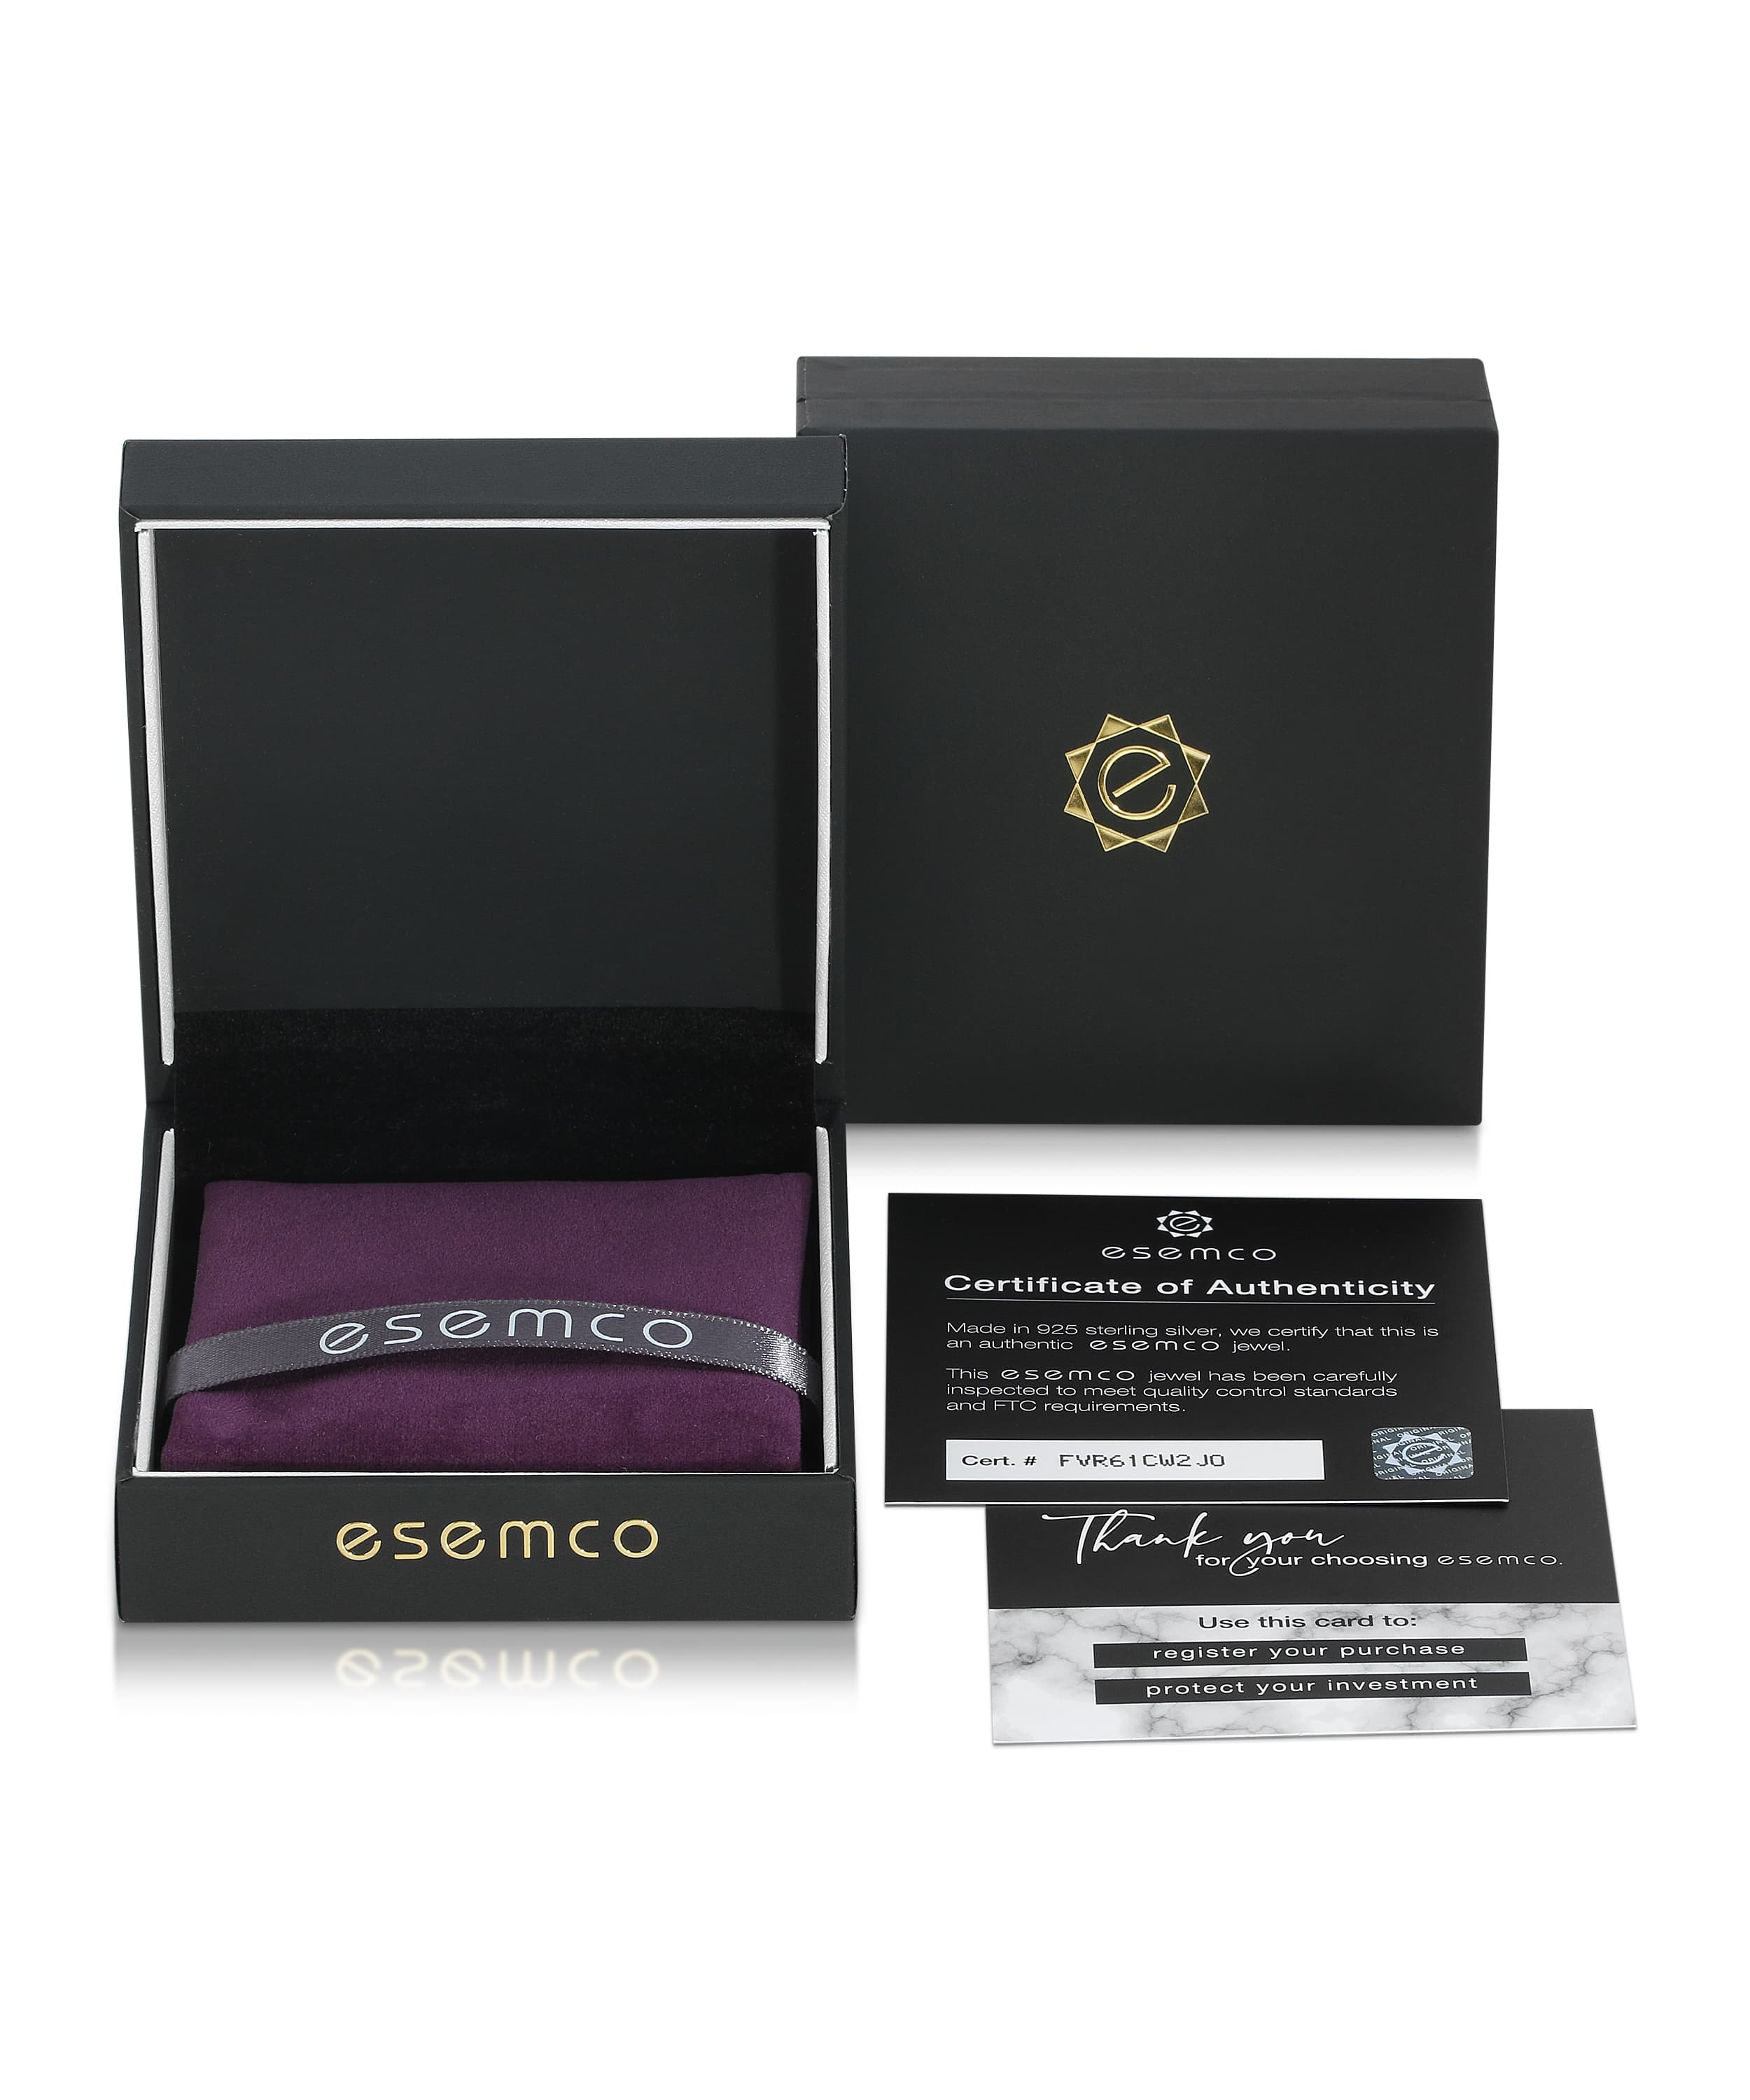 ESEMCO Diamond 18k White Gold Letter Q Initial Open Ring View 4